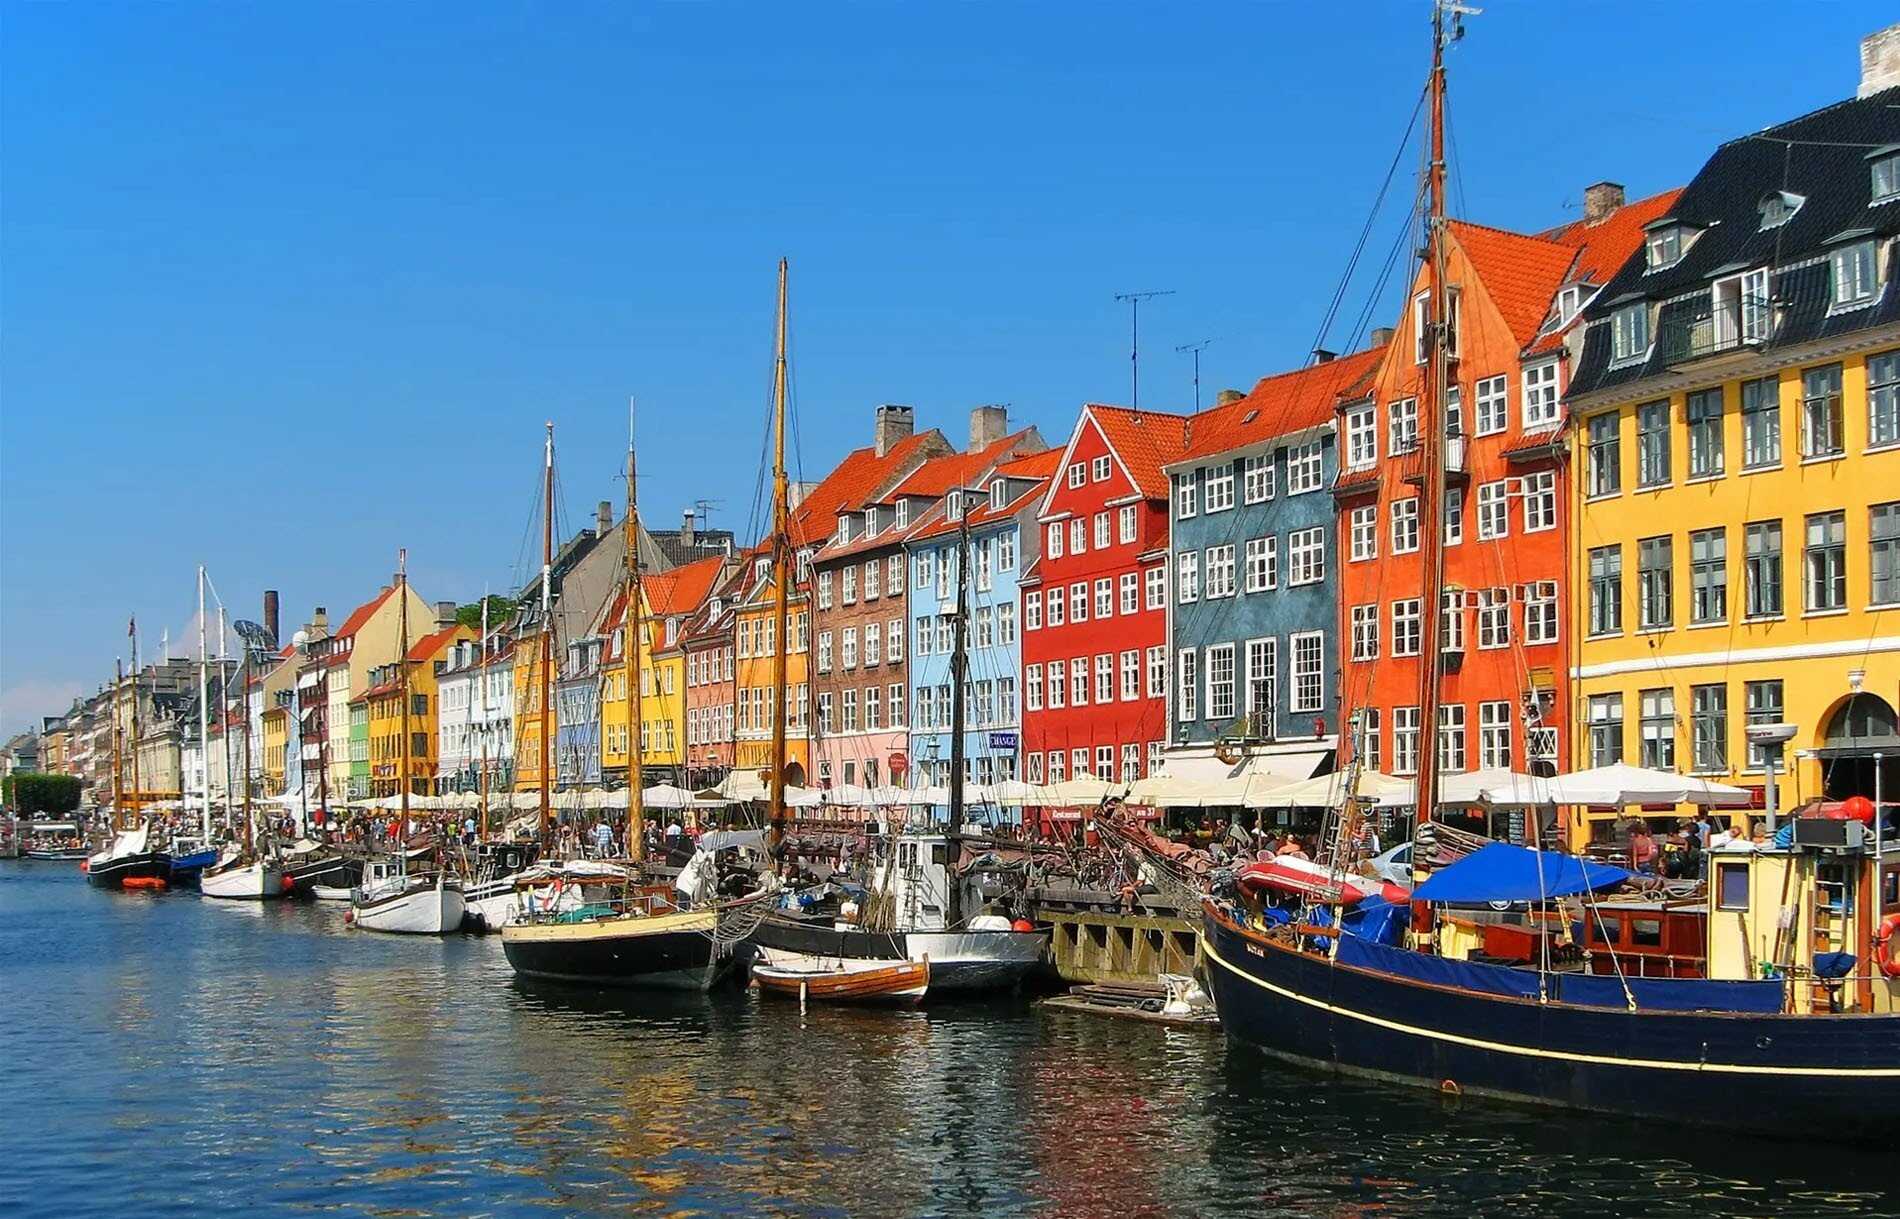 Du lịch Châu Âu - Đan Mạch - Na Uy - Thụy Điển mùa Hè từ Sài Gòn giá hấp dẫn